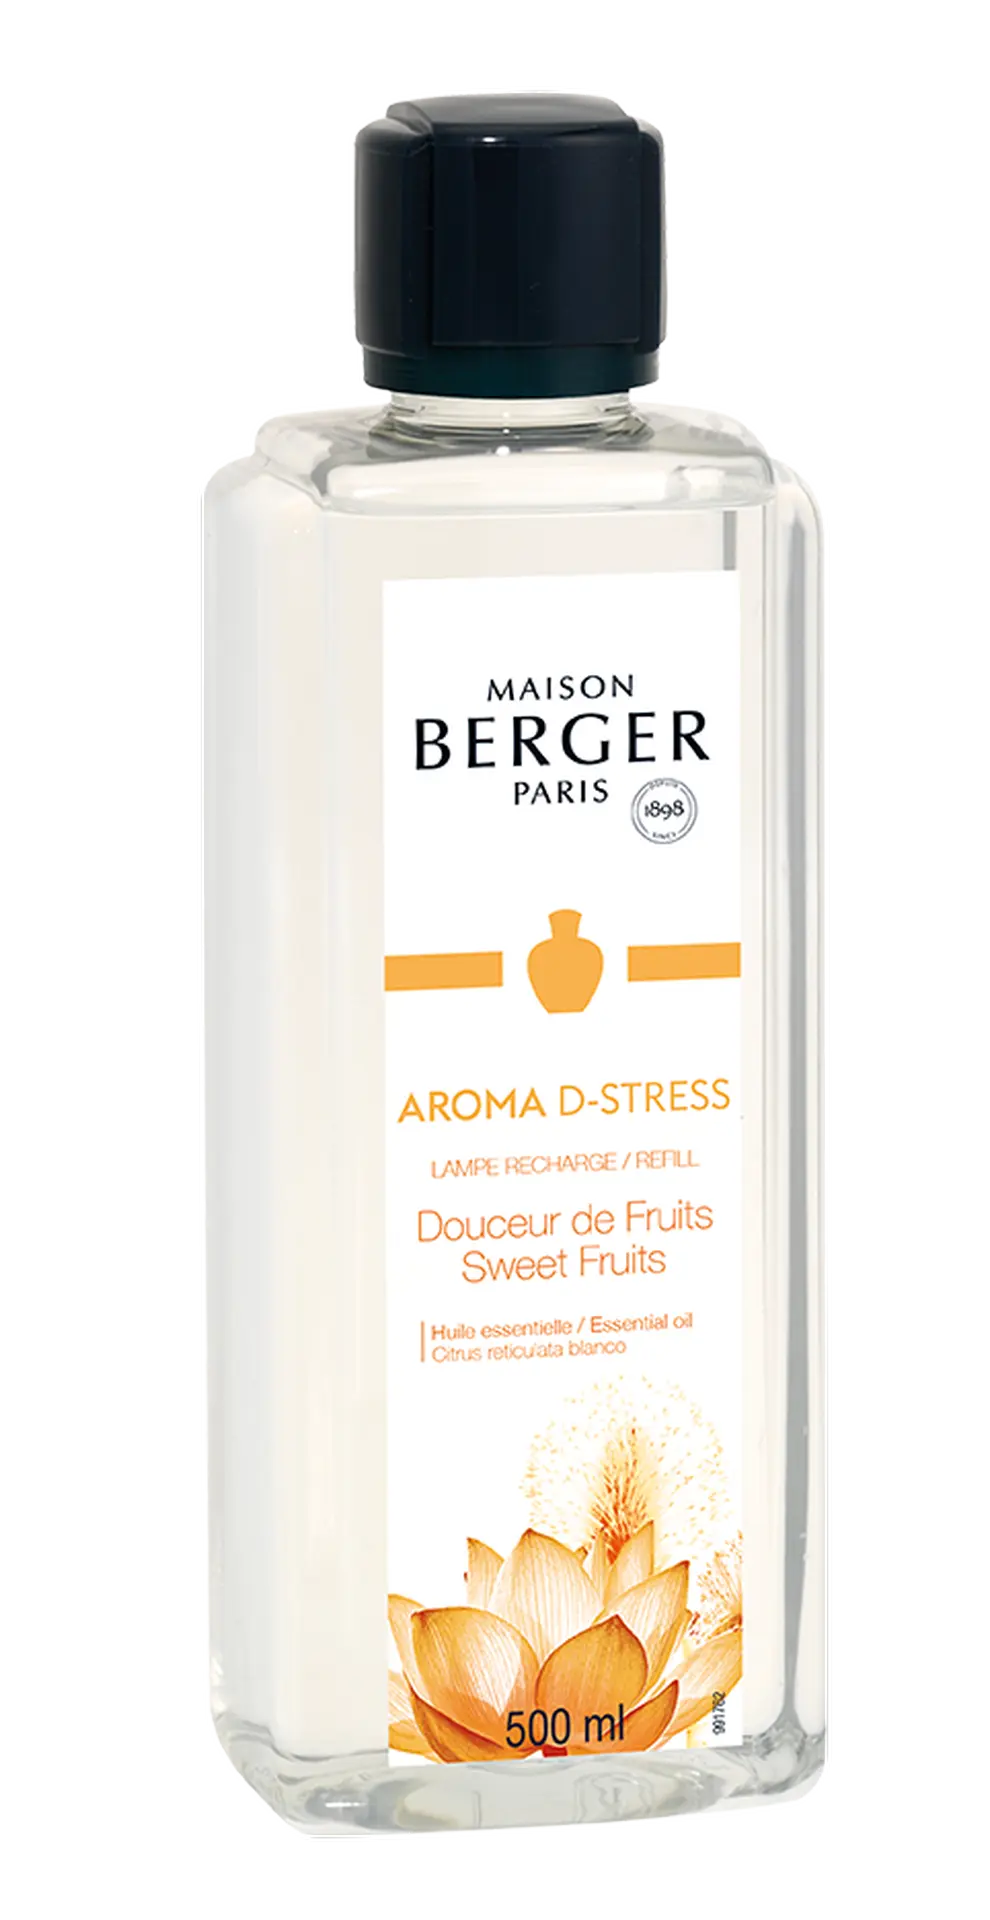 MAISON BERGER PARIS - Sweet Fruits – Lampe Berger Duft 500 ml - Aroma D-Stress - Maison Berger Refill